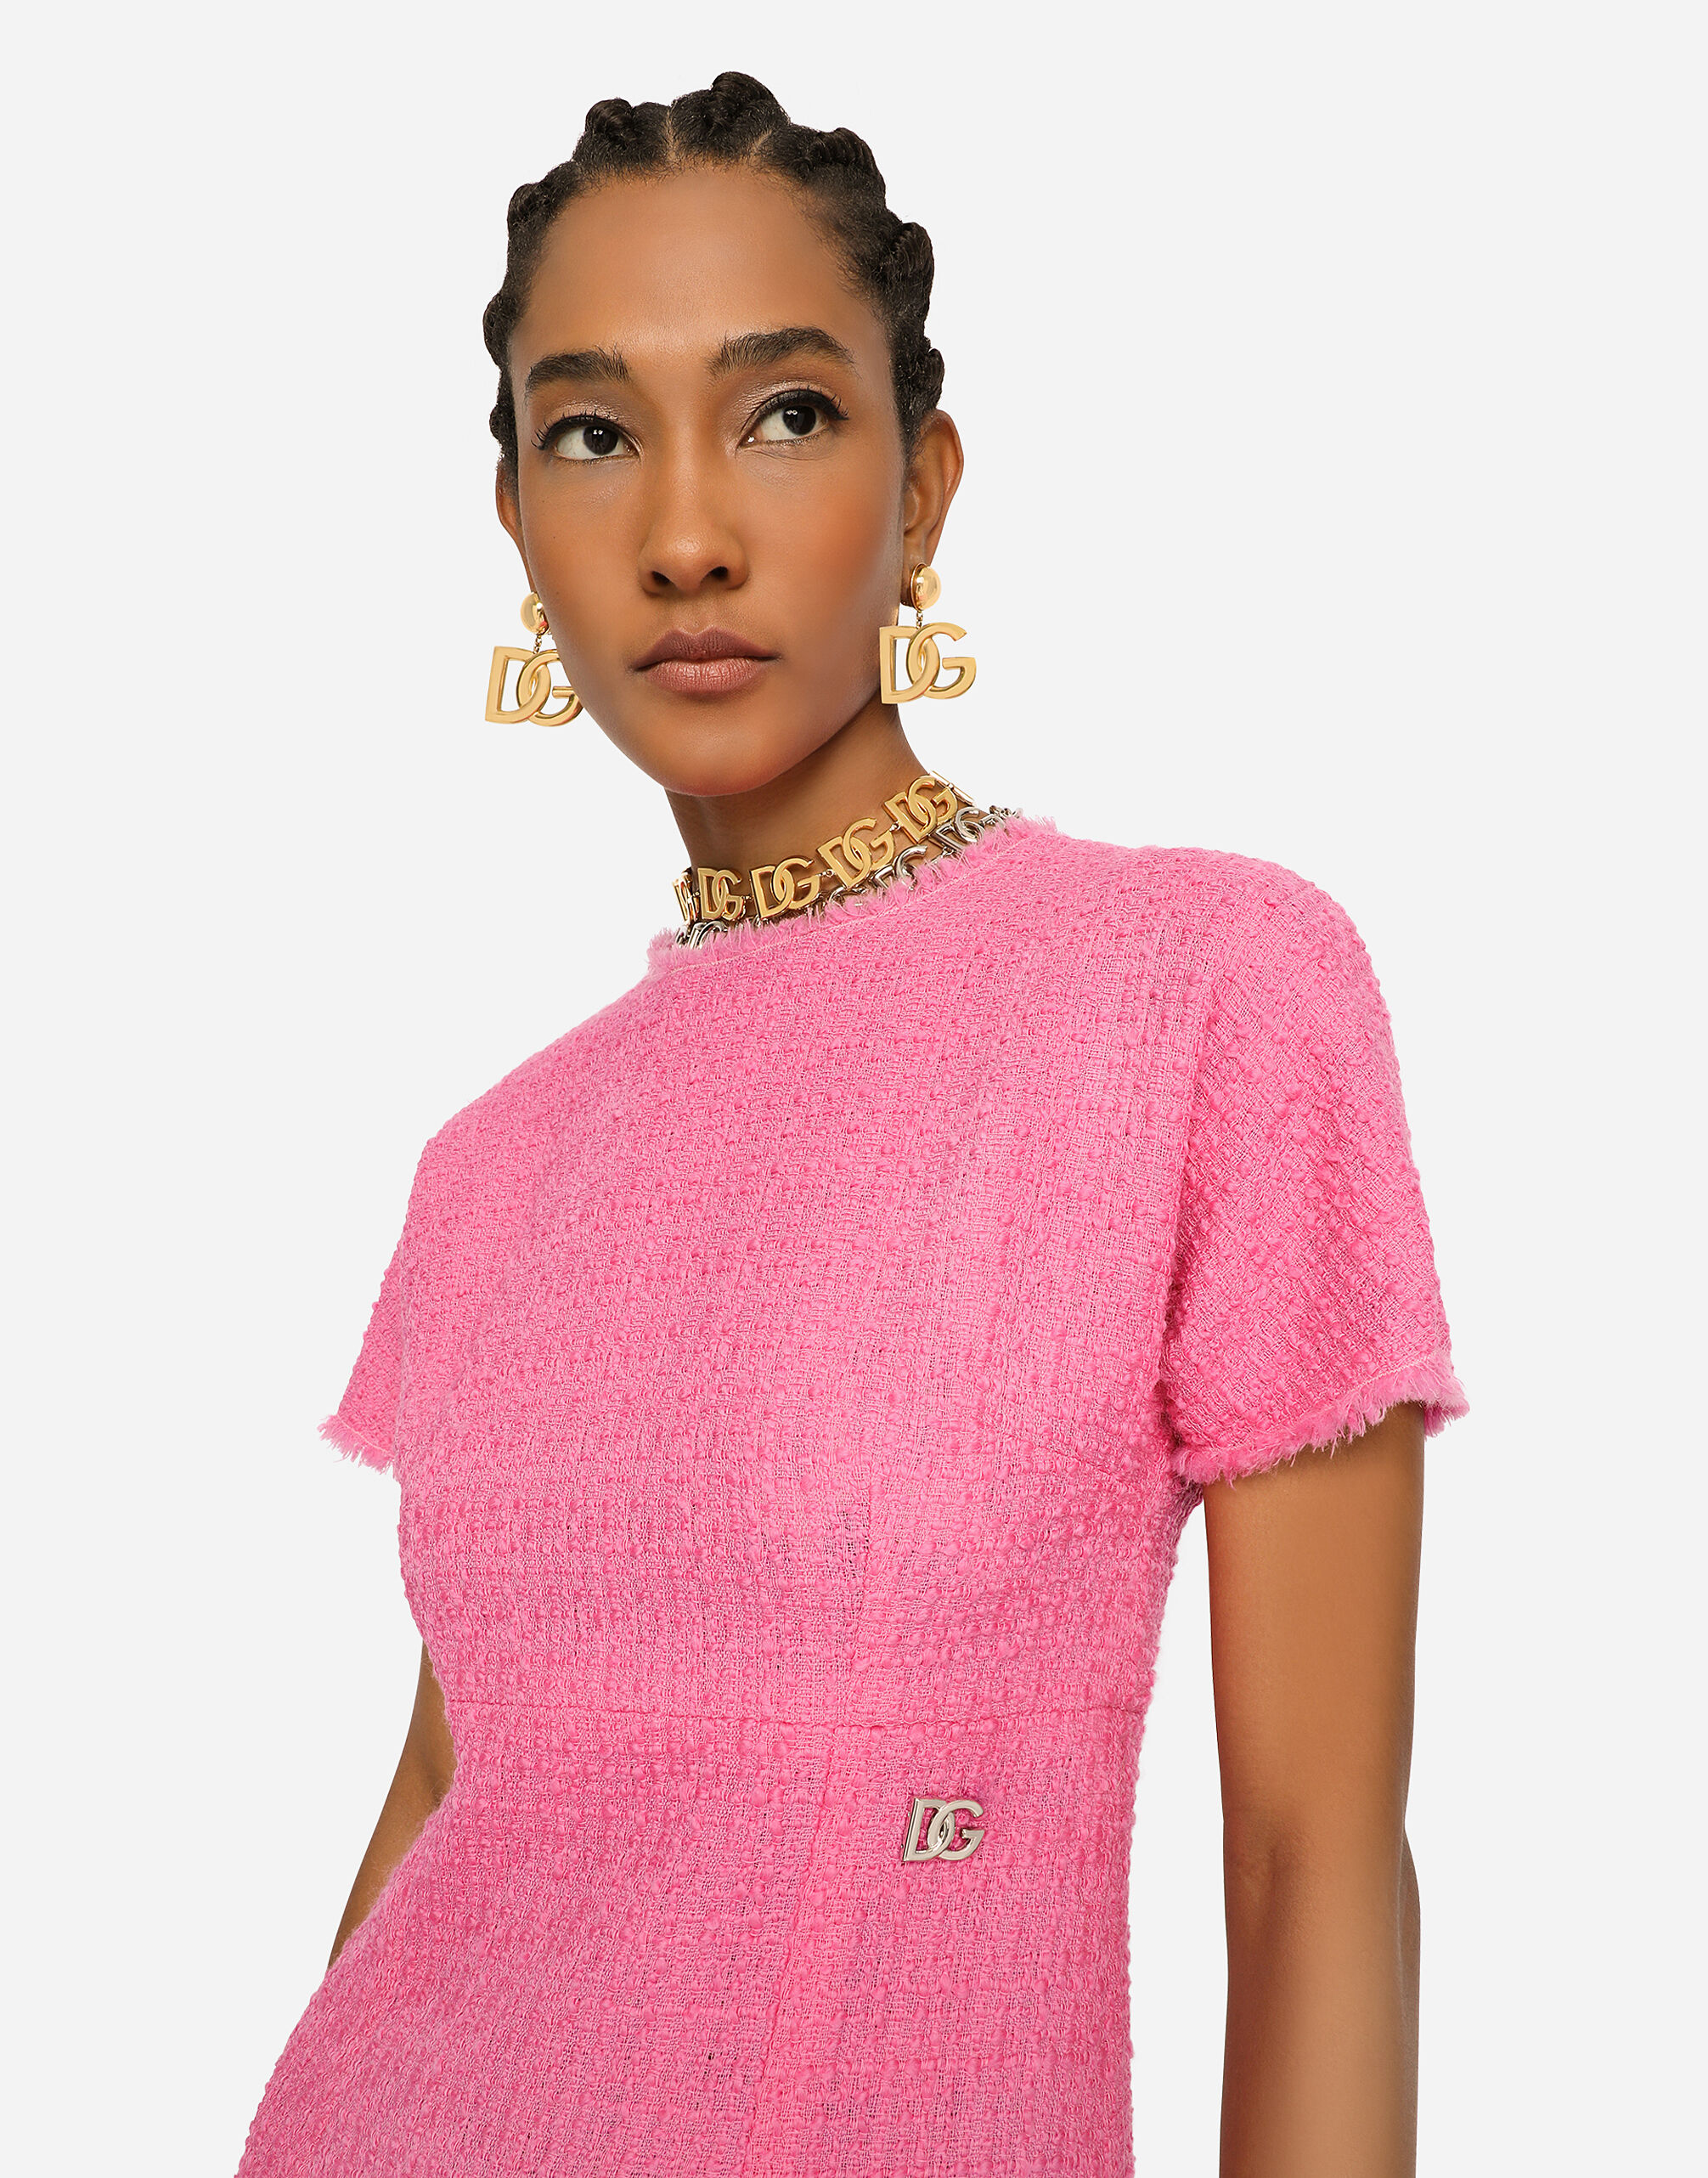 Raschel tweed calf-length dress with DG logo in Pink for Women 